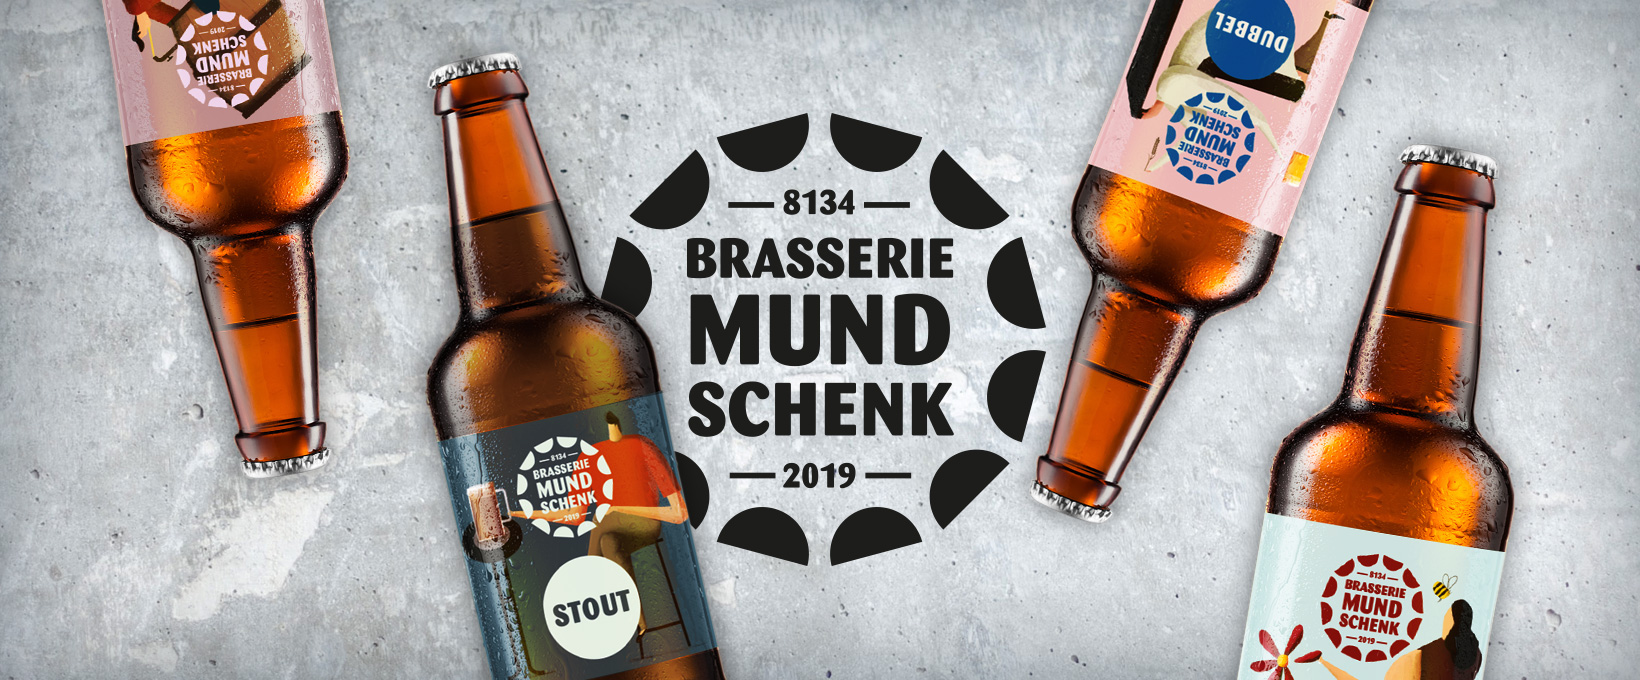 Brasserie Mundschenk News